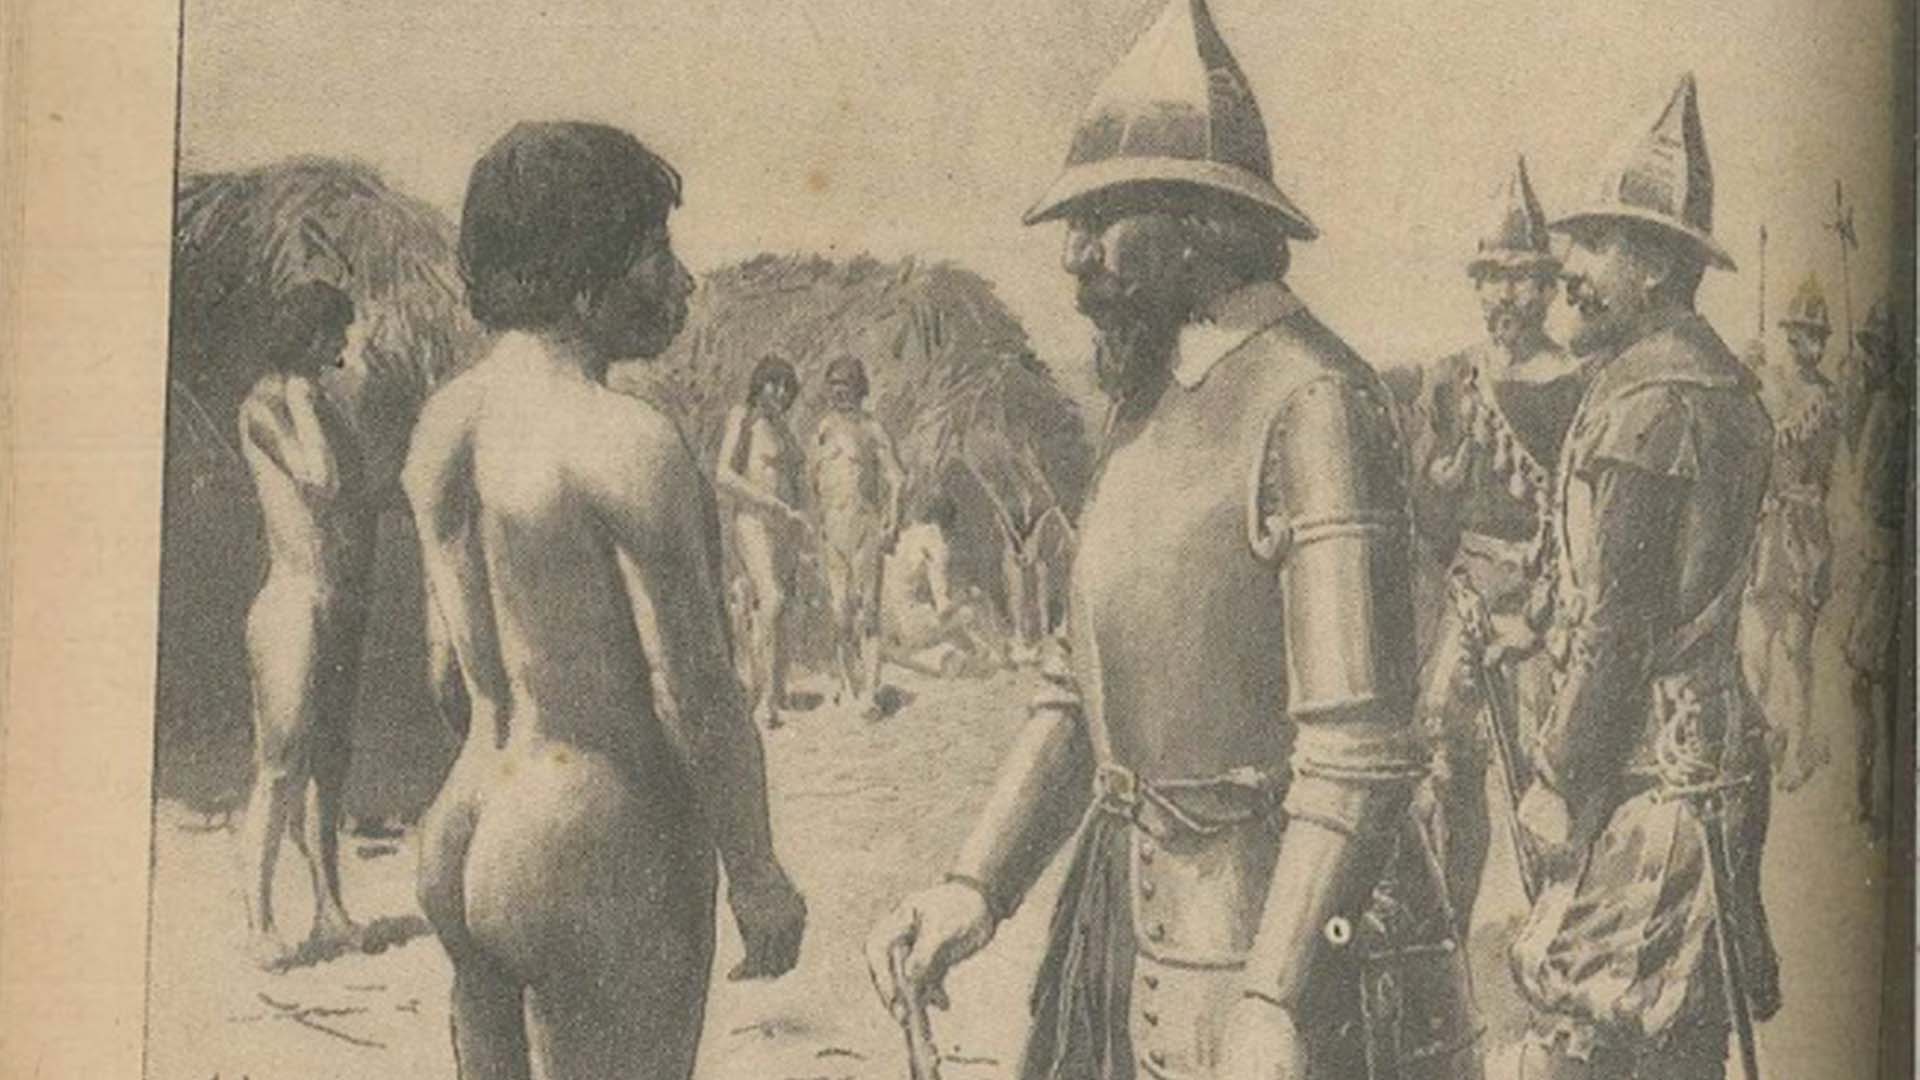 Encuentro de culturas diversas en las tierras rioplatenses: un conquistador conversa con un guaraní. Dibujo de Fortuny